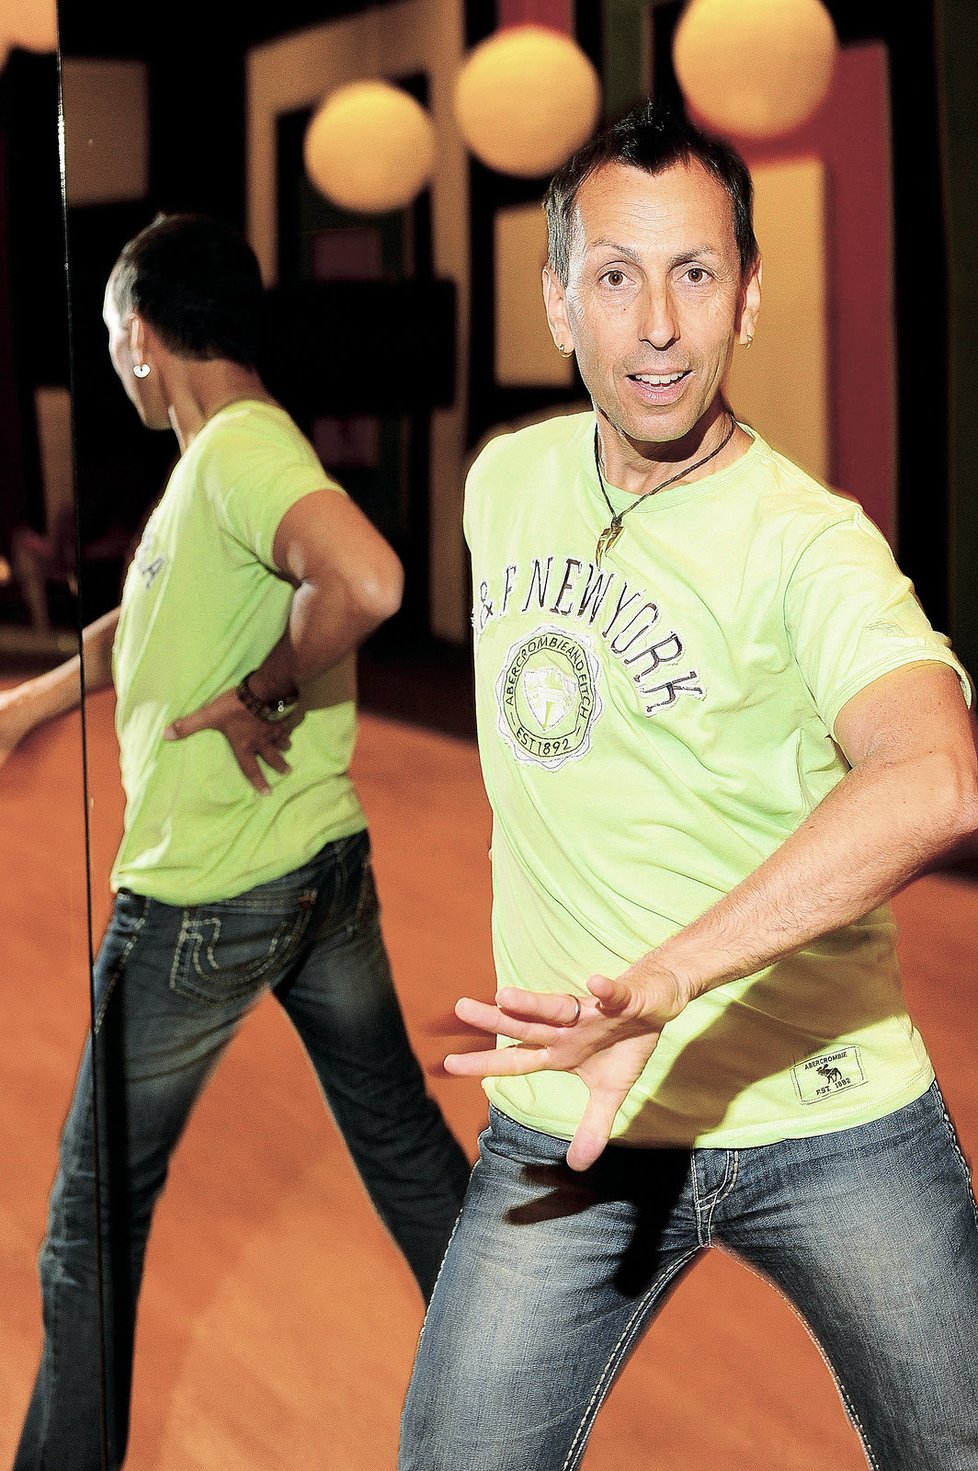 Nejzkušenějším porotcem je tanečník Zdeněk Chlopčík, který v porotě zasedá od začátku soutěže v roce 2006